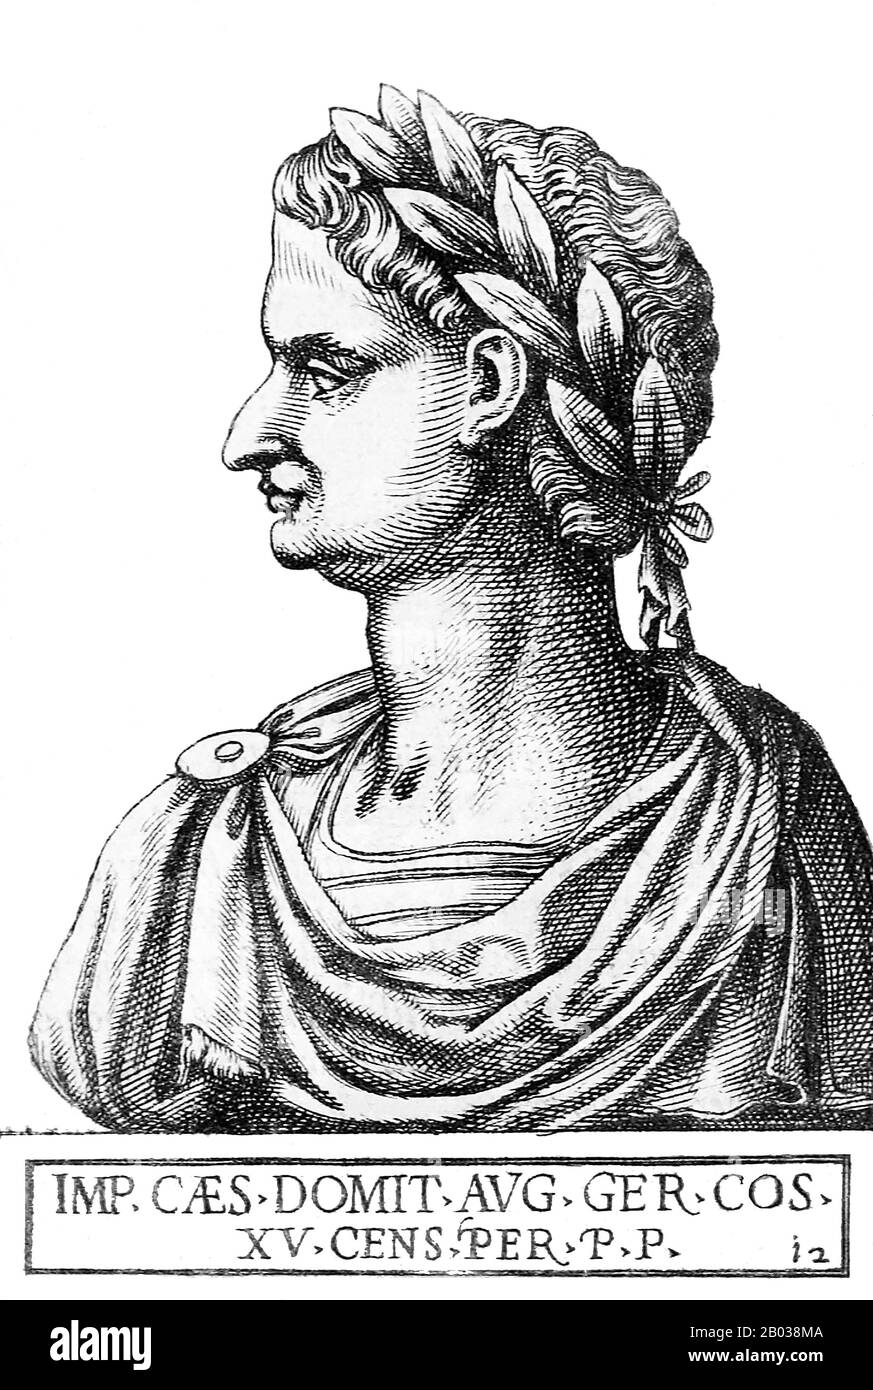 Terzo e ultimo imperatore della diansty flaviano, Domiziano (51-96) era il figlio più giovane di Vespasiano e trascorse la maggior parte dei suoi giovani all'ombra del suo fratello più compiuto Tito, che si guadagnò il suo meritato durante La Prima guerra ebraico-romana. Quando suo padre divenne imperatore alla fine dell'anno Dei Quattro imperatori nel 69 d.C., a Tito furono assegnati molti uffici, mentre Domiziano deteneva onori ma non responsabilità. Questo sarebbe andato avanti per molti anni, fino a quando suo fratello, succeduto a suo padre nel 79 d.C., egli stesso morì inaspettatamente da malattia nel 81 d.C. Domiziano fu improvvisamente dichiarato imperatore dal Praeto Foto Stock